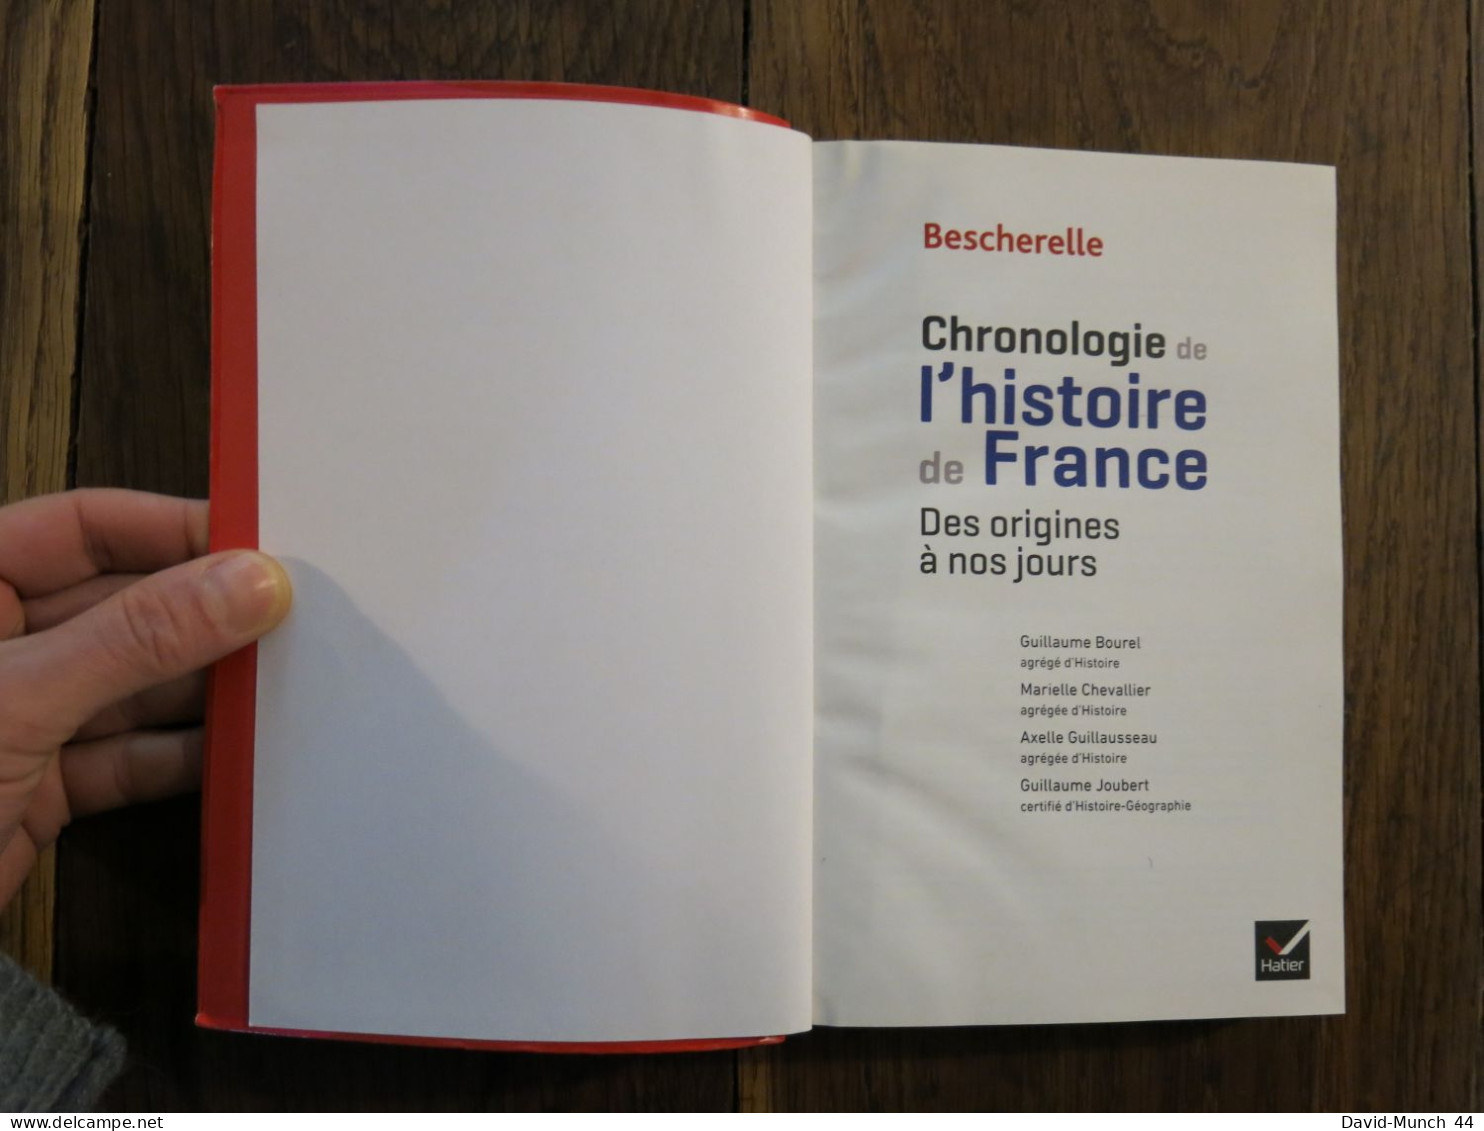 Bescherelle Histoire Collège Chronologie Des Origines à Nos Jours. Ouvrage Collectif. Hatier. 2016, Nouvelle édition - History